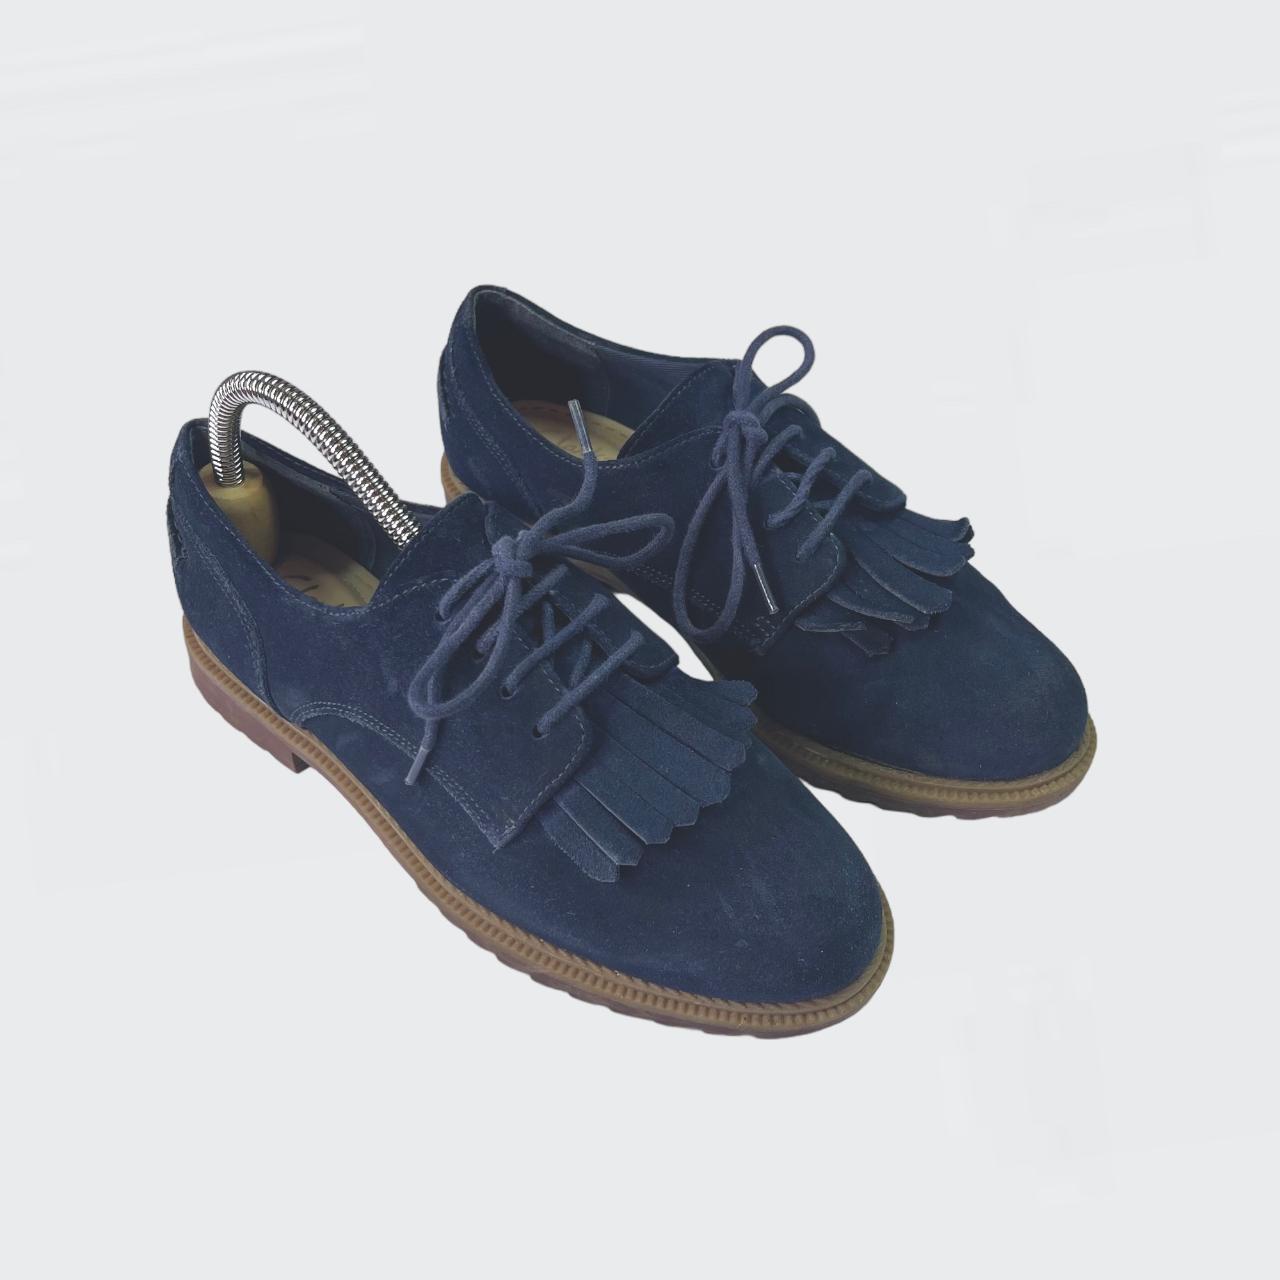 Clarks Somerset Griffin Fringe Suede Shoes - Size UK... - Depop